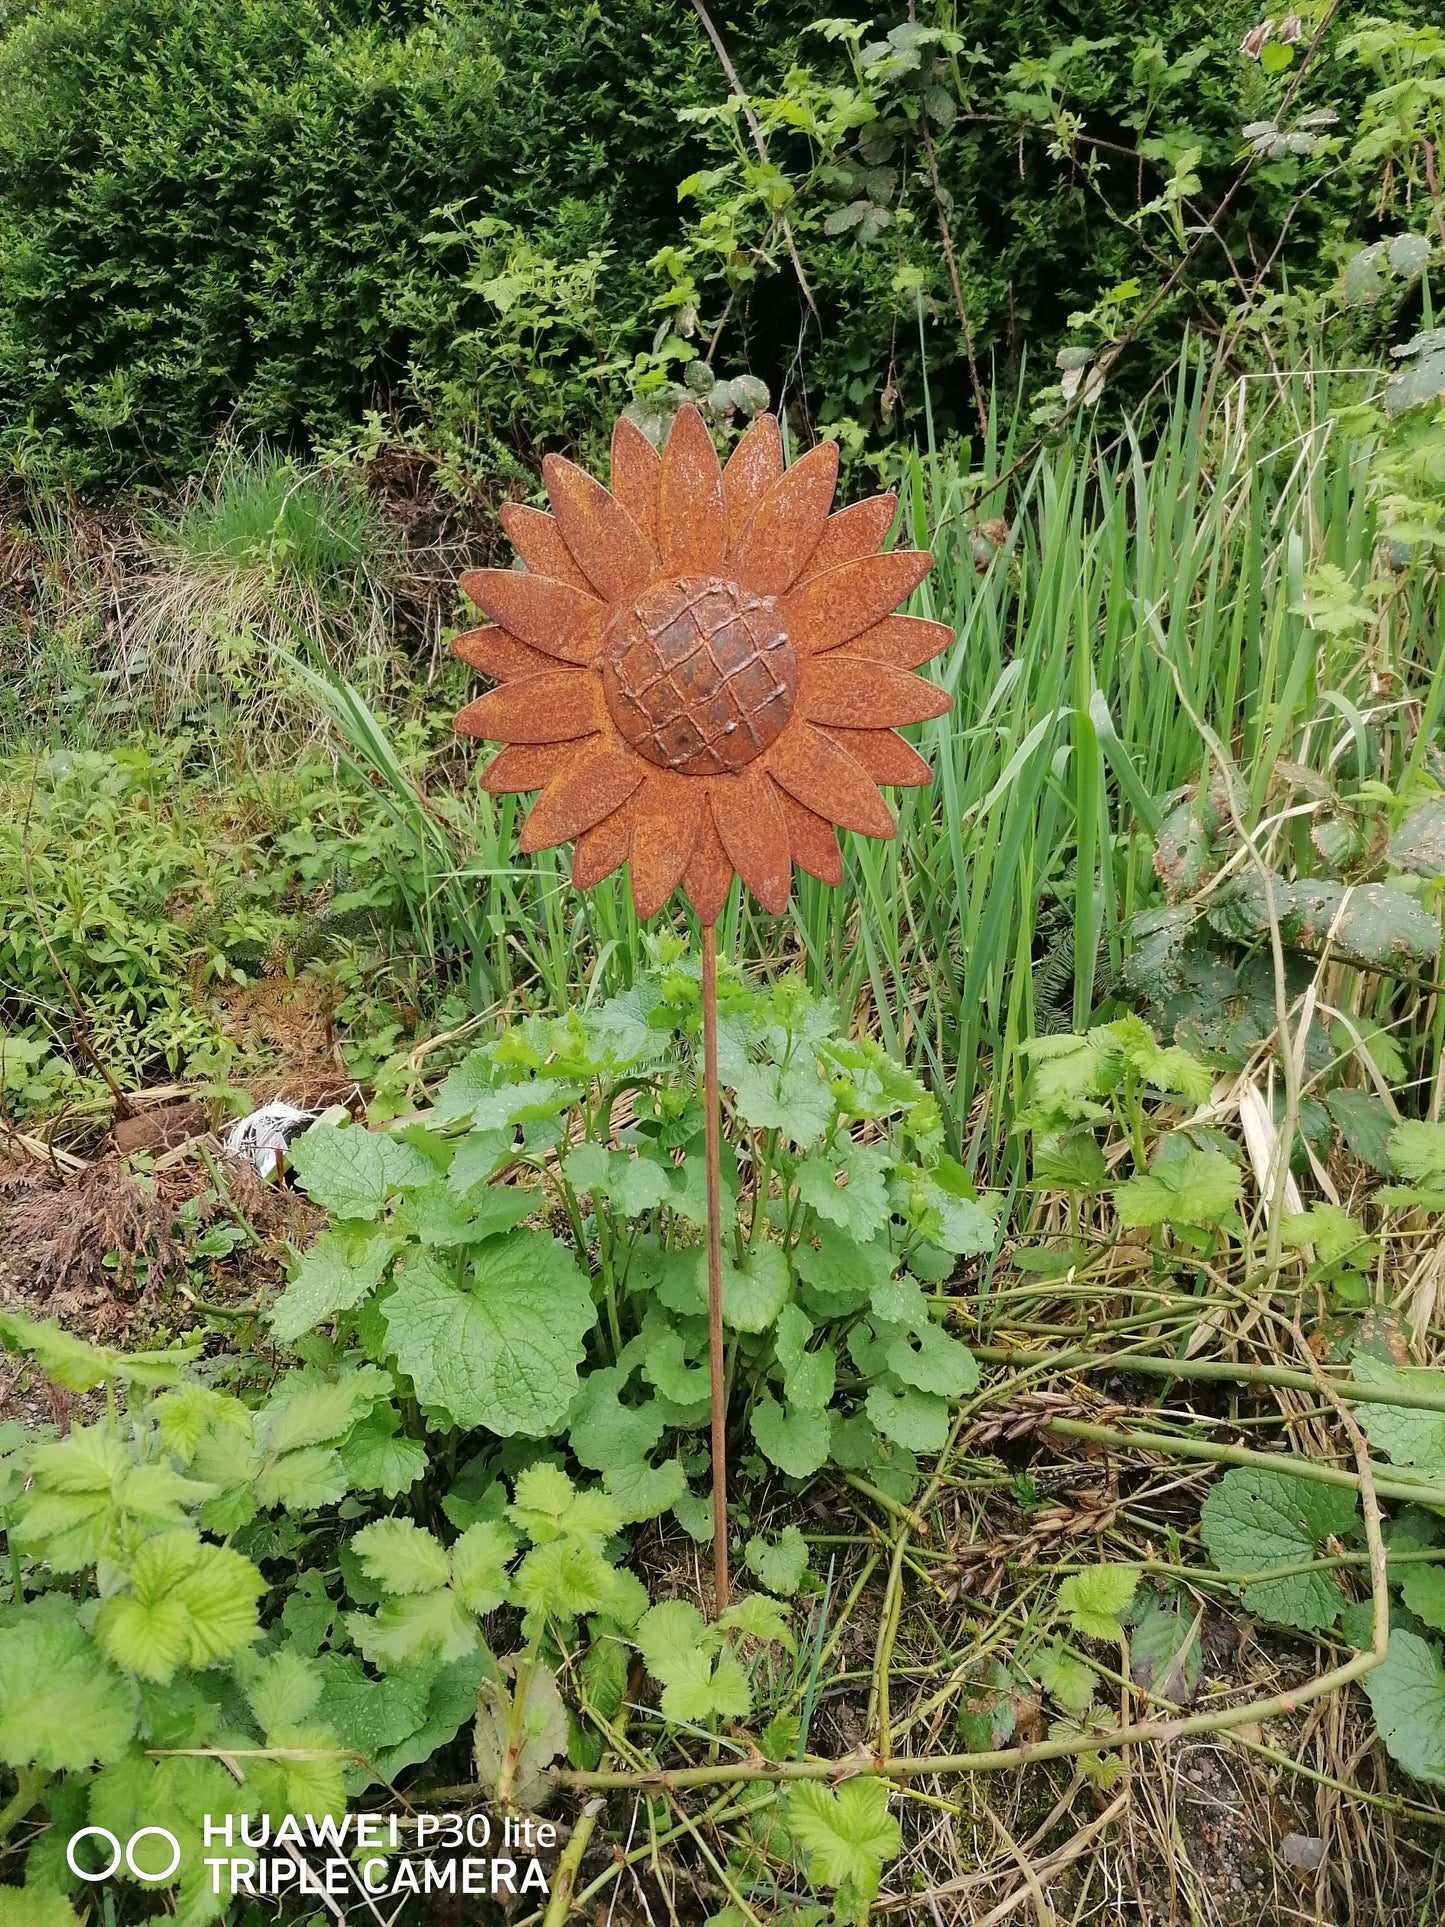 NEU !! Gartenstecker Sonnenblume 135 cm lang aus Metall in Edelrost Deko Rankhilfe